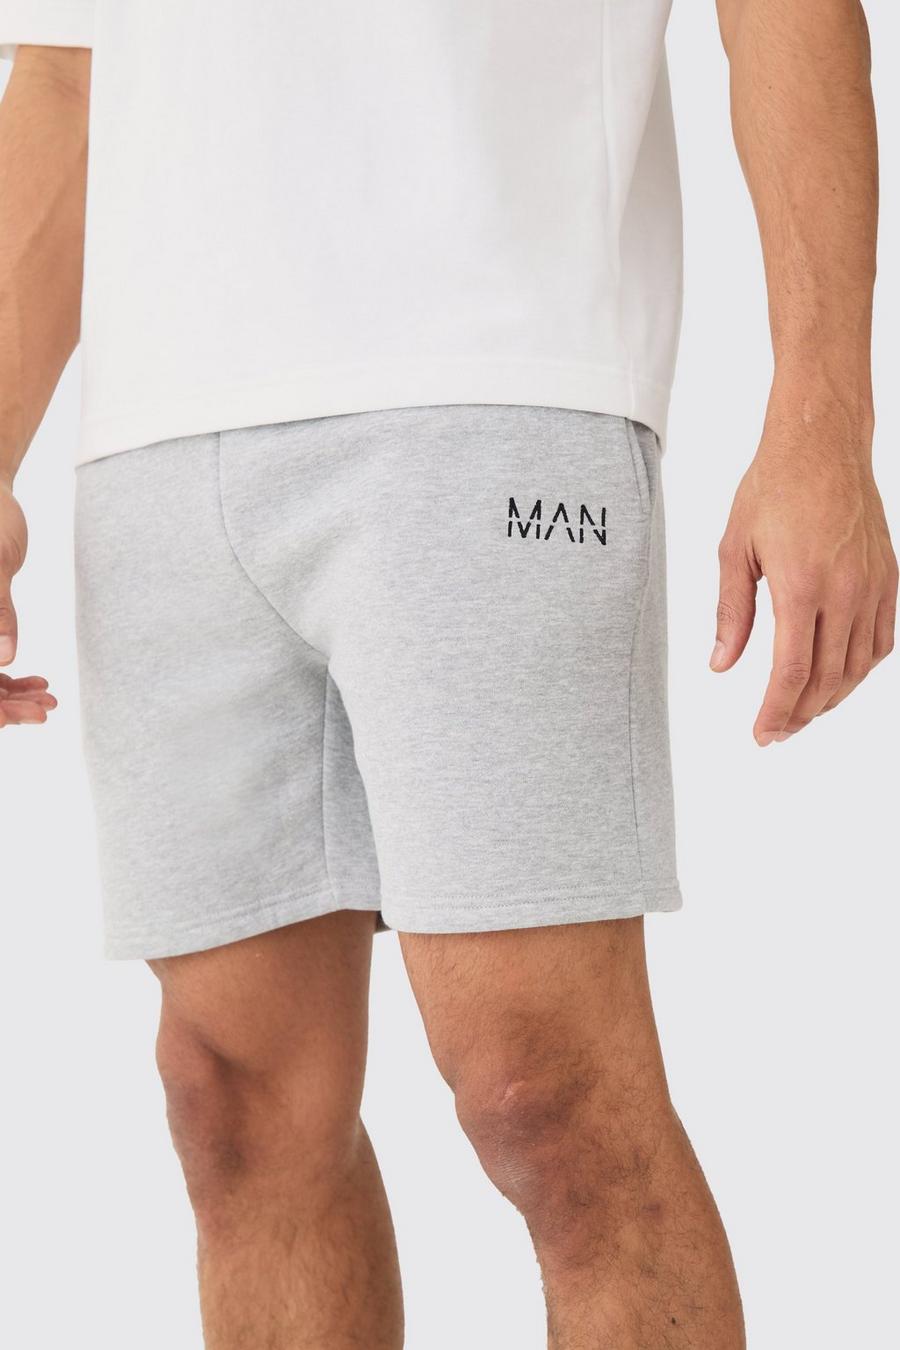 Pantalón corto ajustado MAN, Grey marl